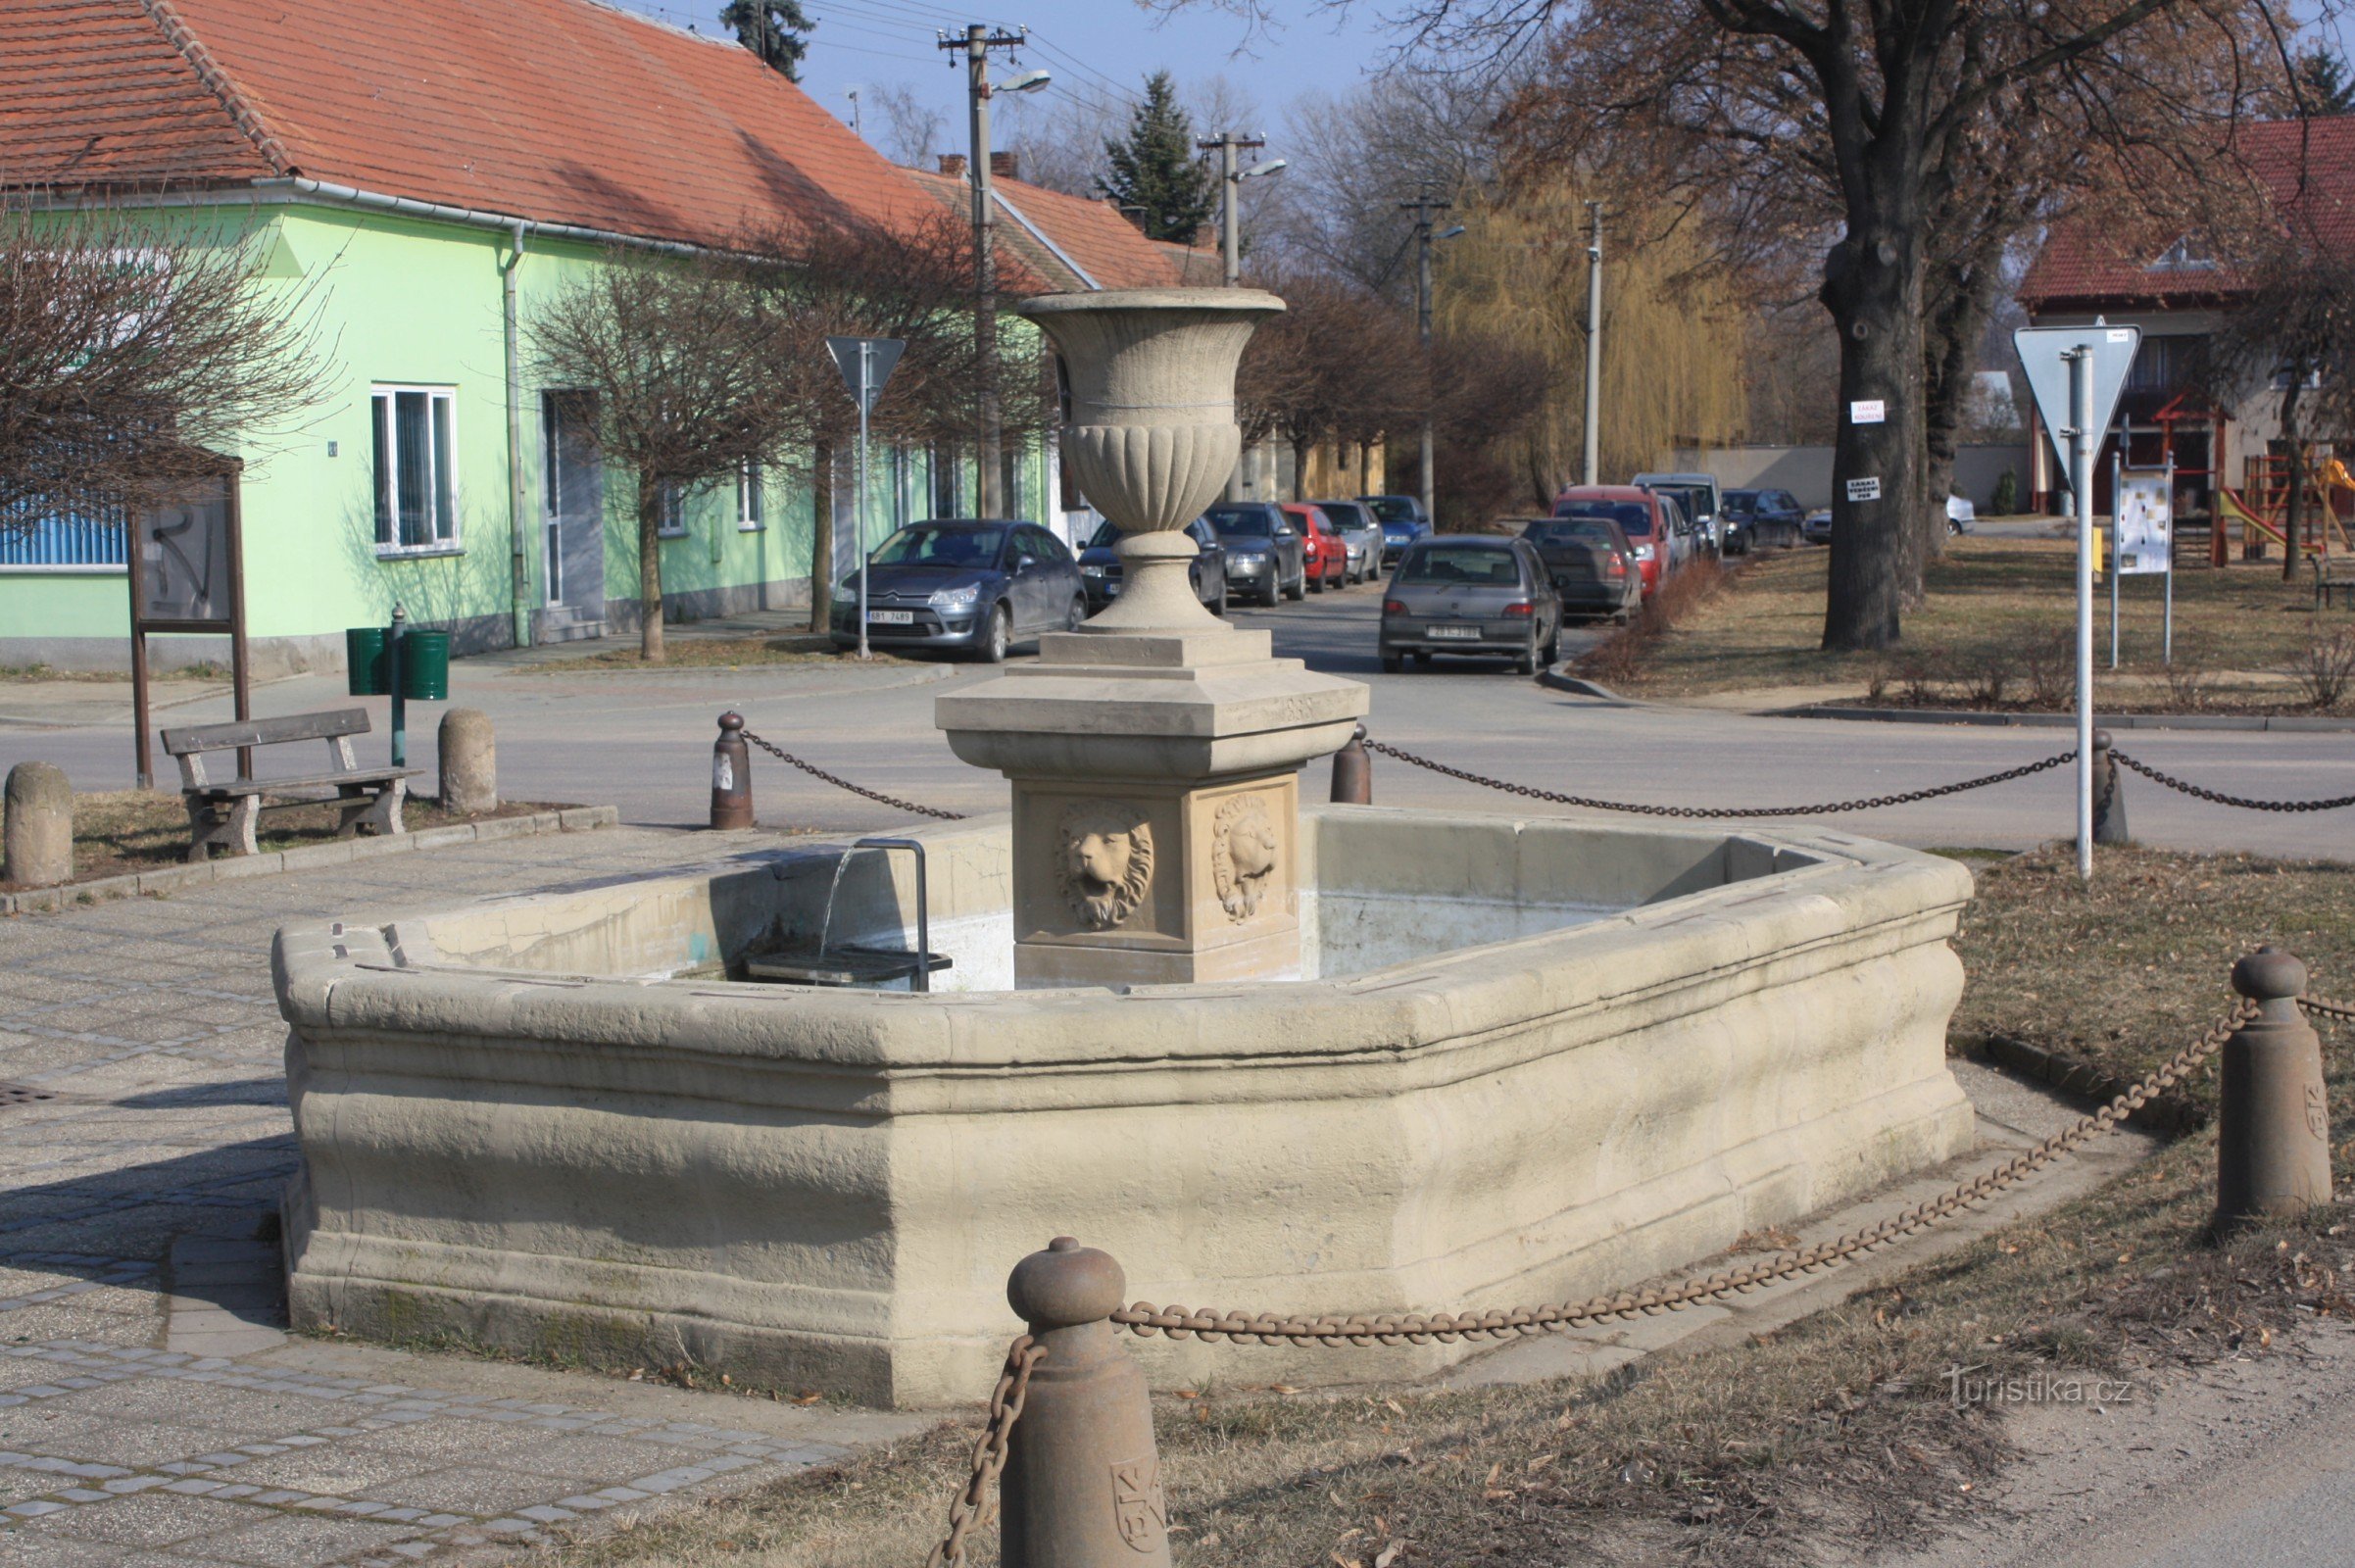 Райград - фонтан в городе